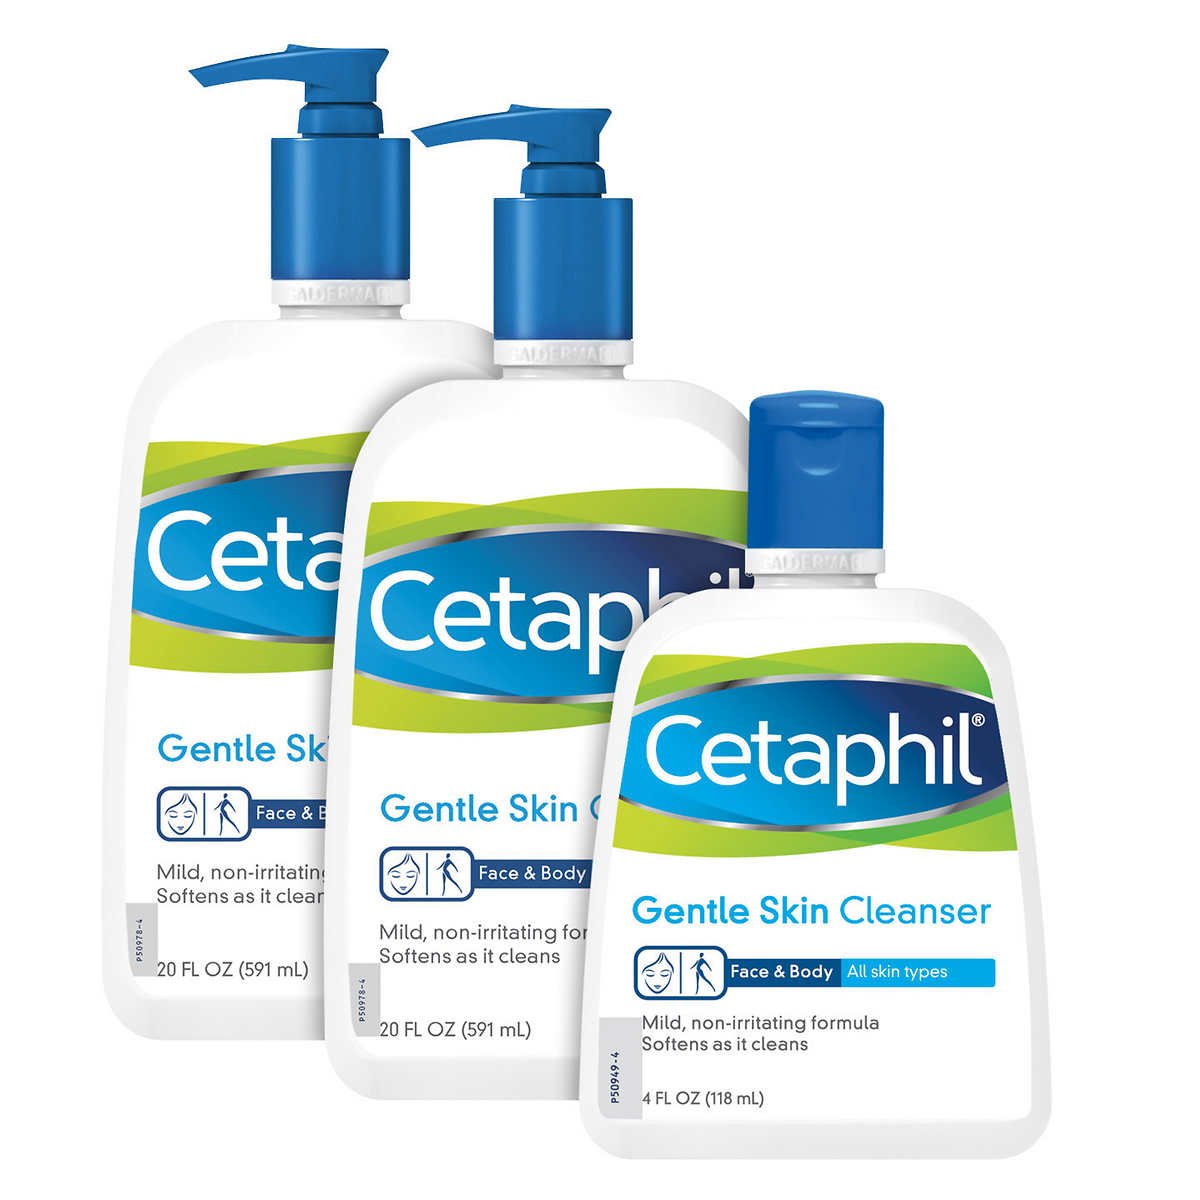 Cetephil Gentle Skin Cleanser